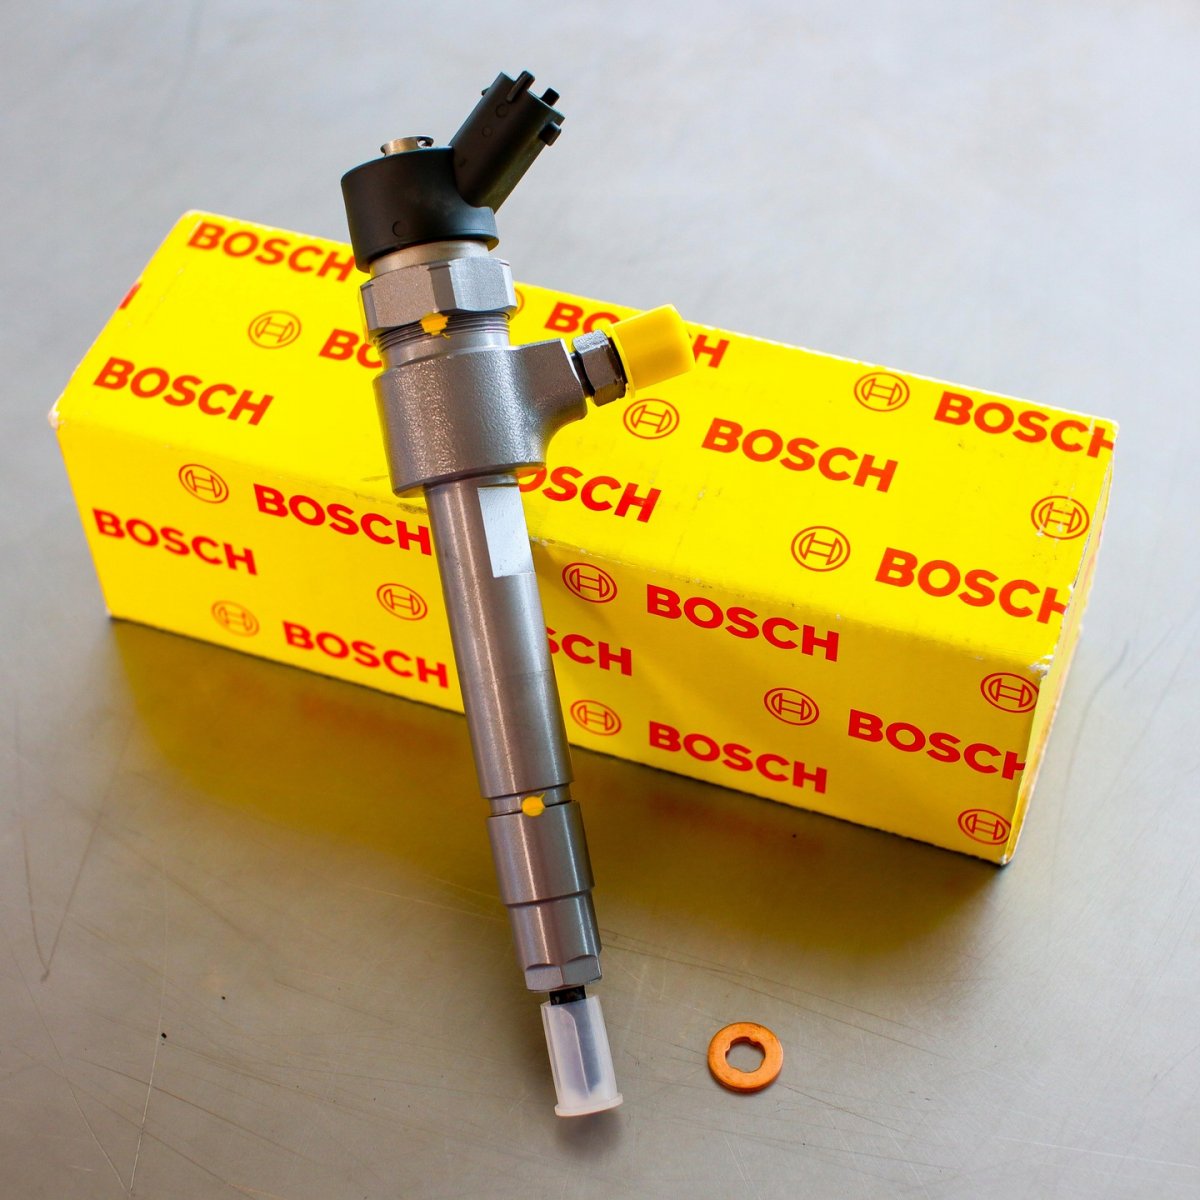 Wtryskiwacz Bosch naprawiony gotowy do nadania do Klienta z gwarancją 24 miesiące w dobrej cenie